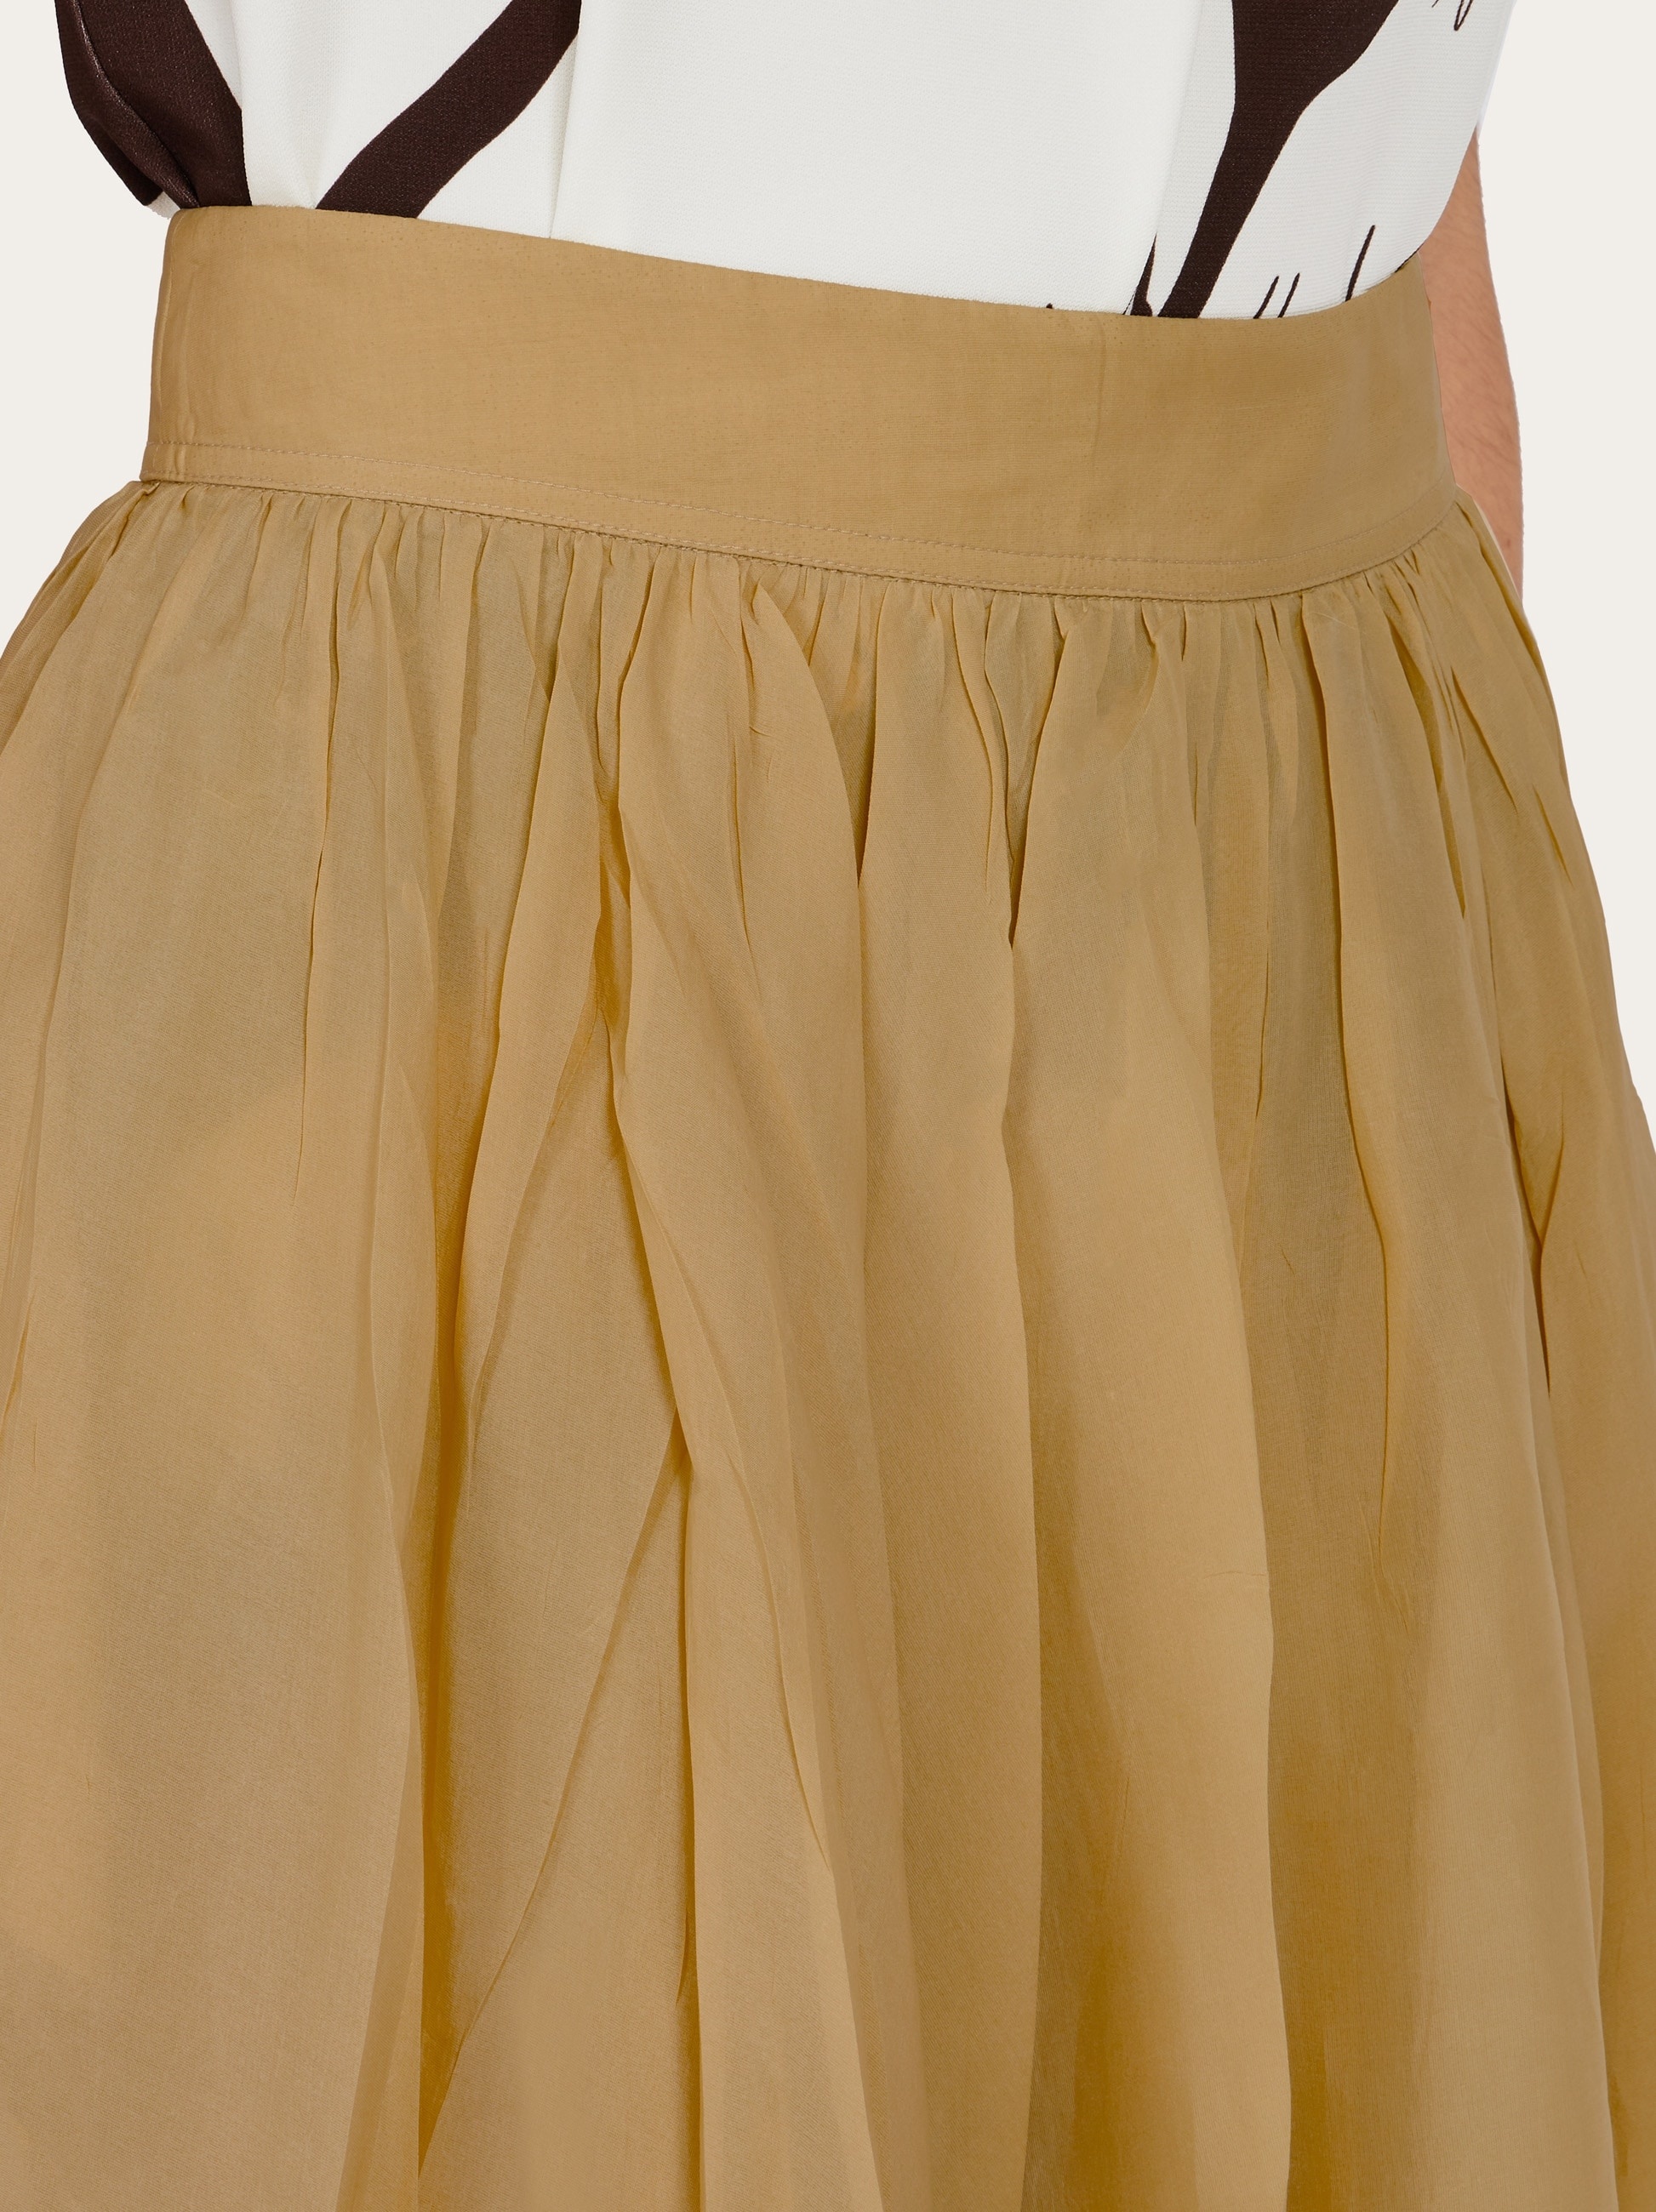 Layered skirt - 5